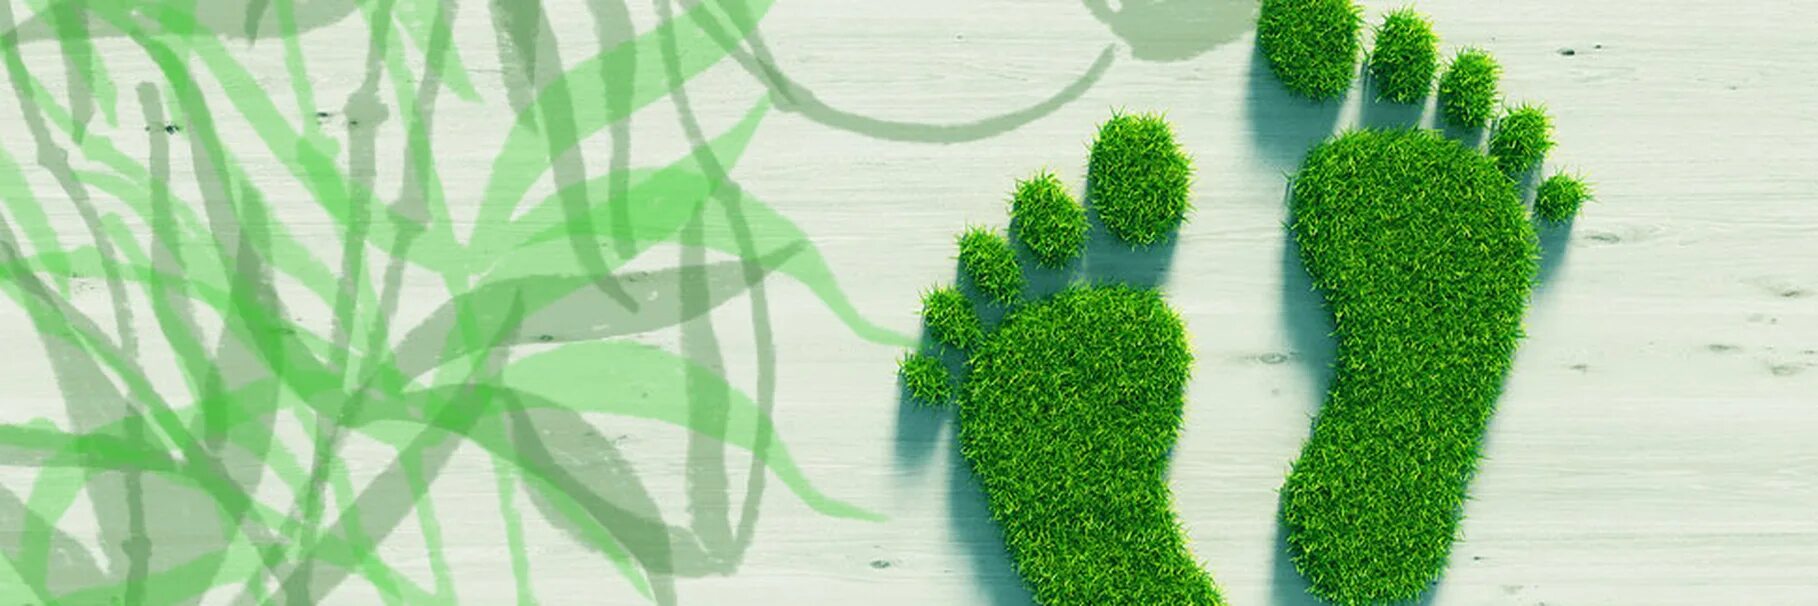 Проект углеродный след. Экологический след. Углеродный след человека в деревьях. Eco footprint. Экологический след картинки.